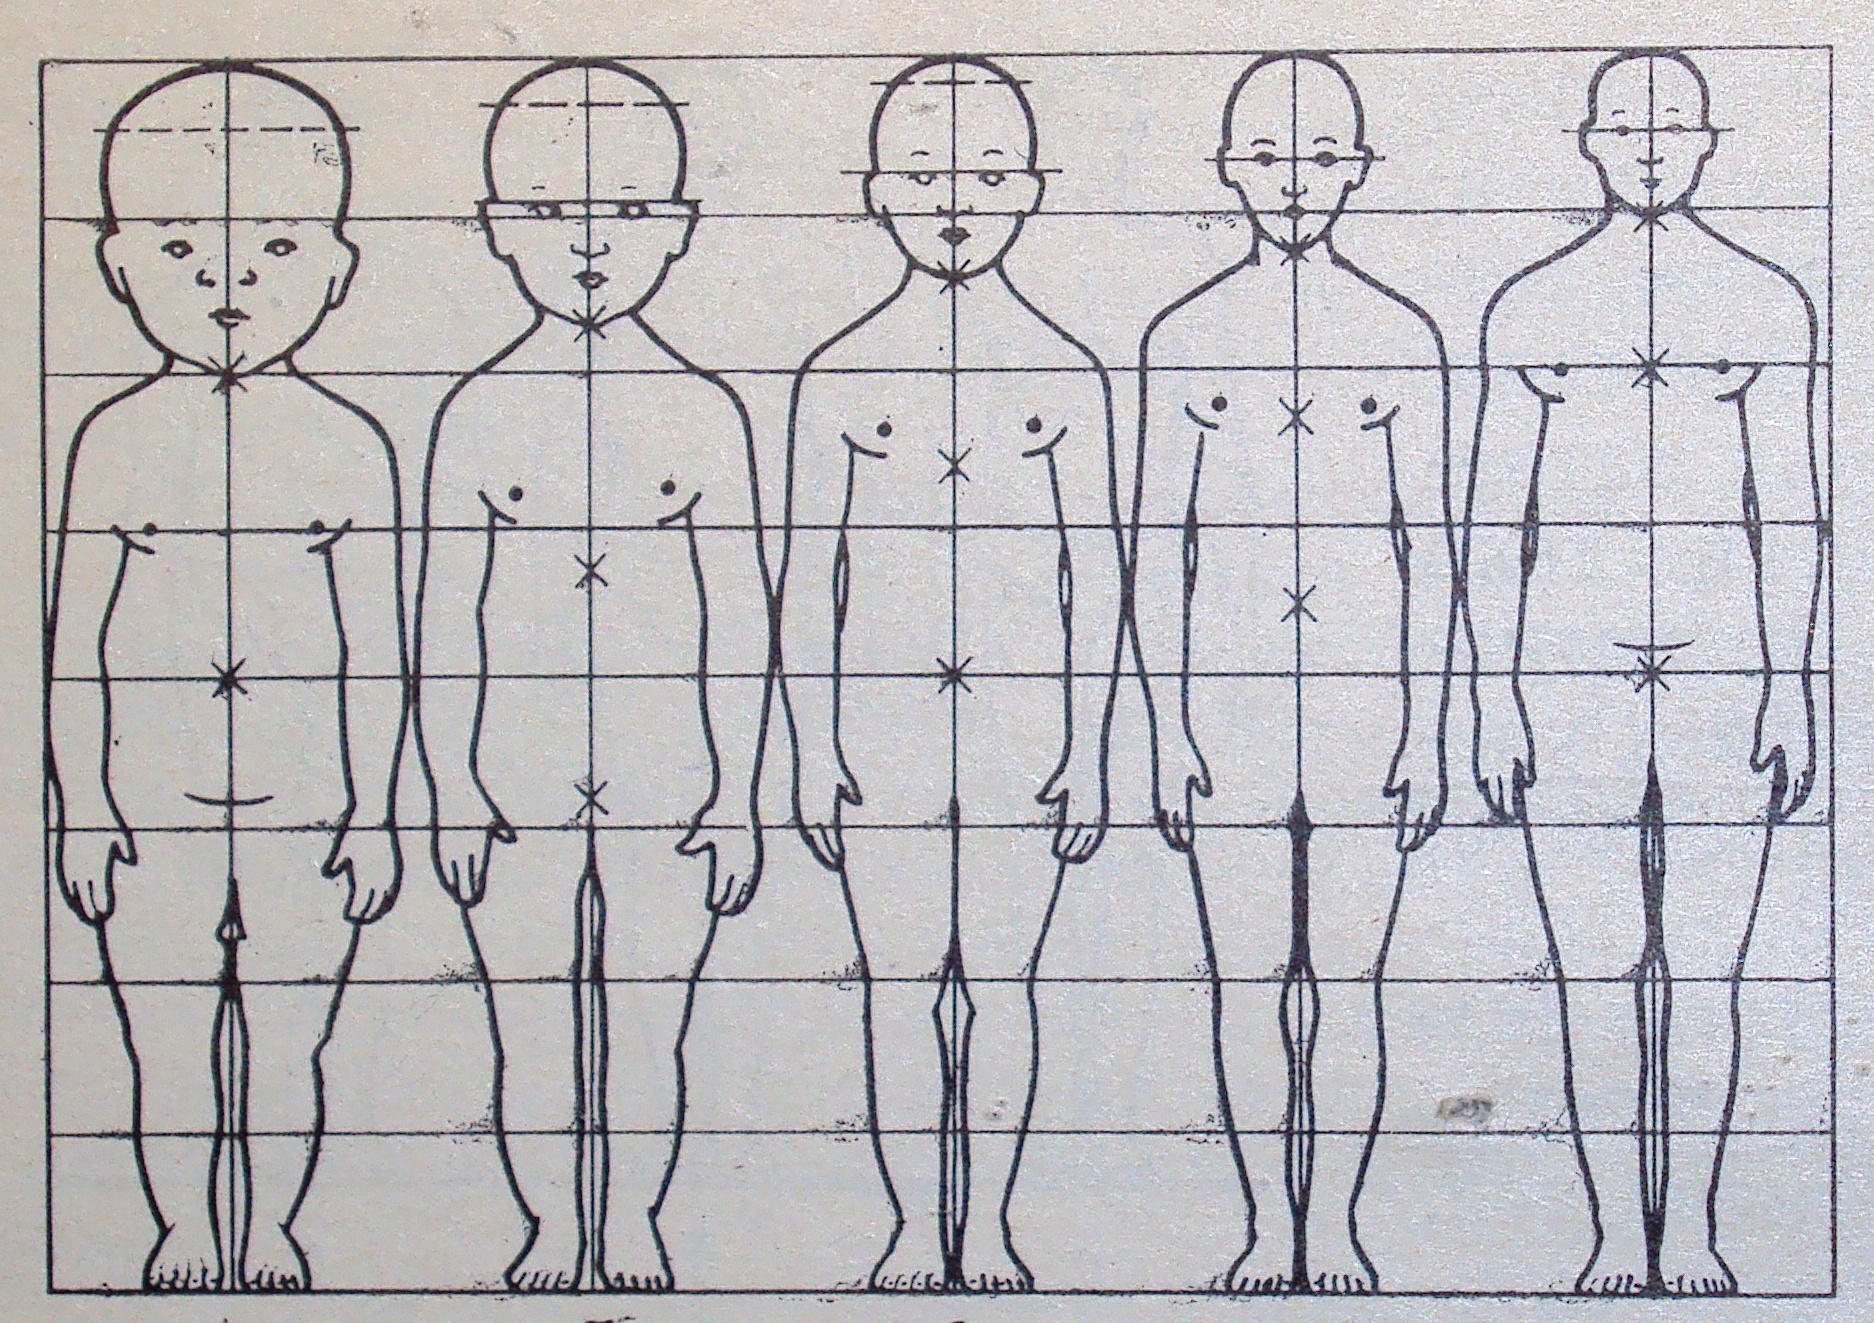 Картинки по параметрам найти. Пропорции тела человека. Пропорции тела ребенка и взрослого. Пропорции тела человека рисунок. Пропорции человека для детей.